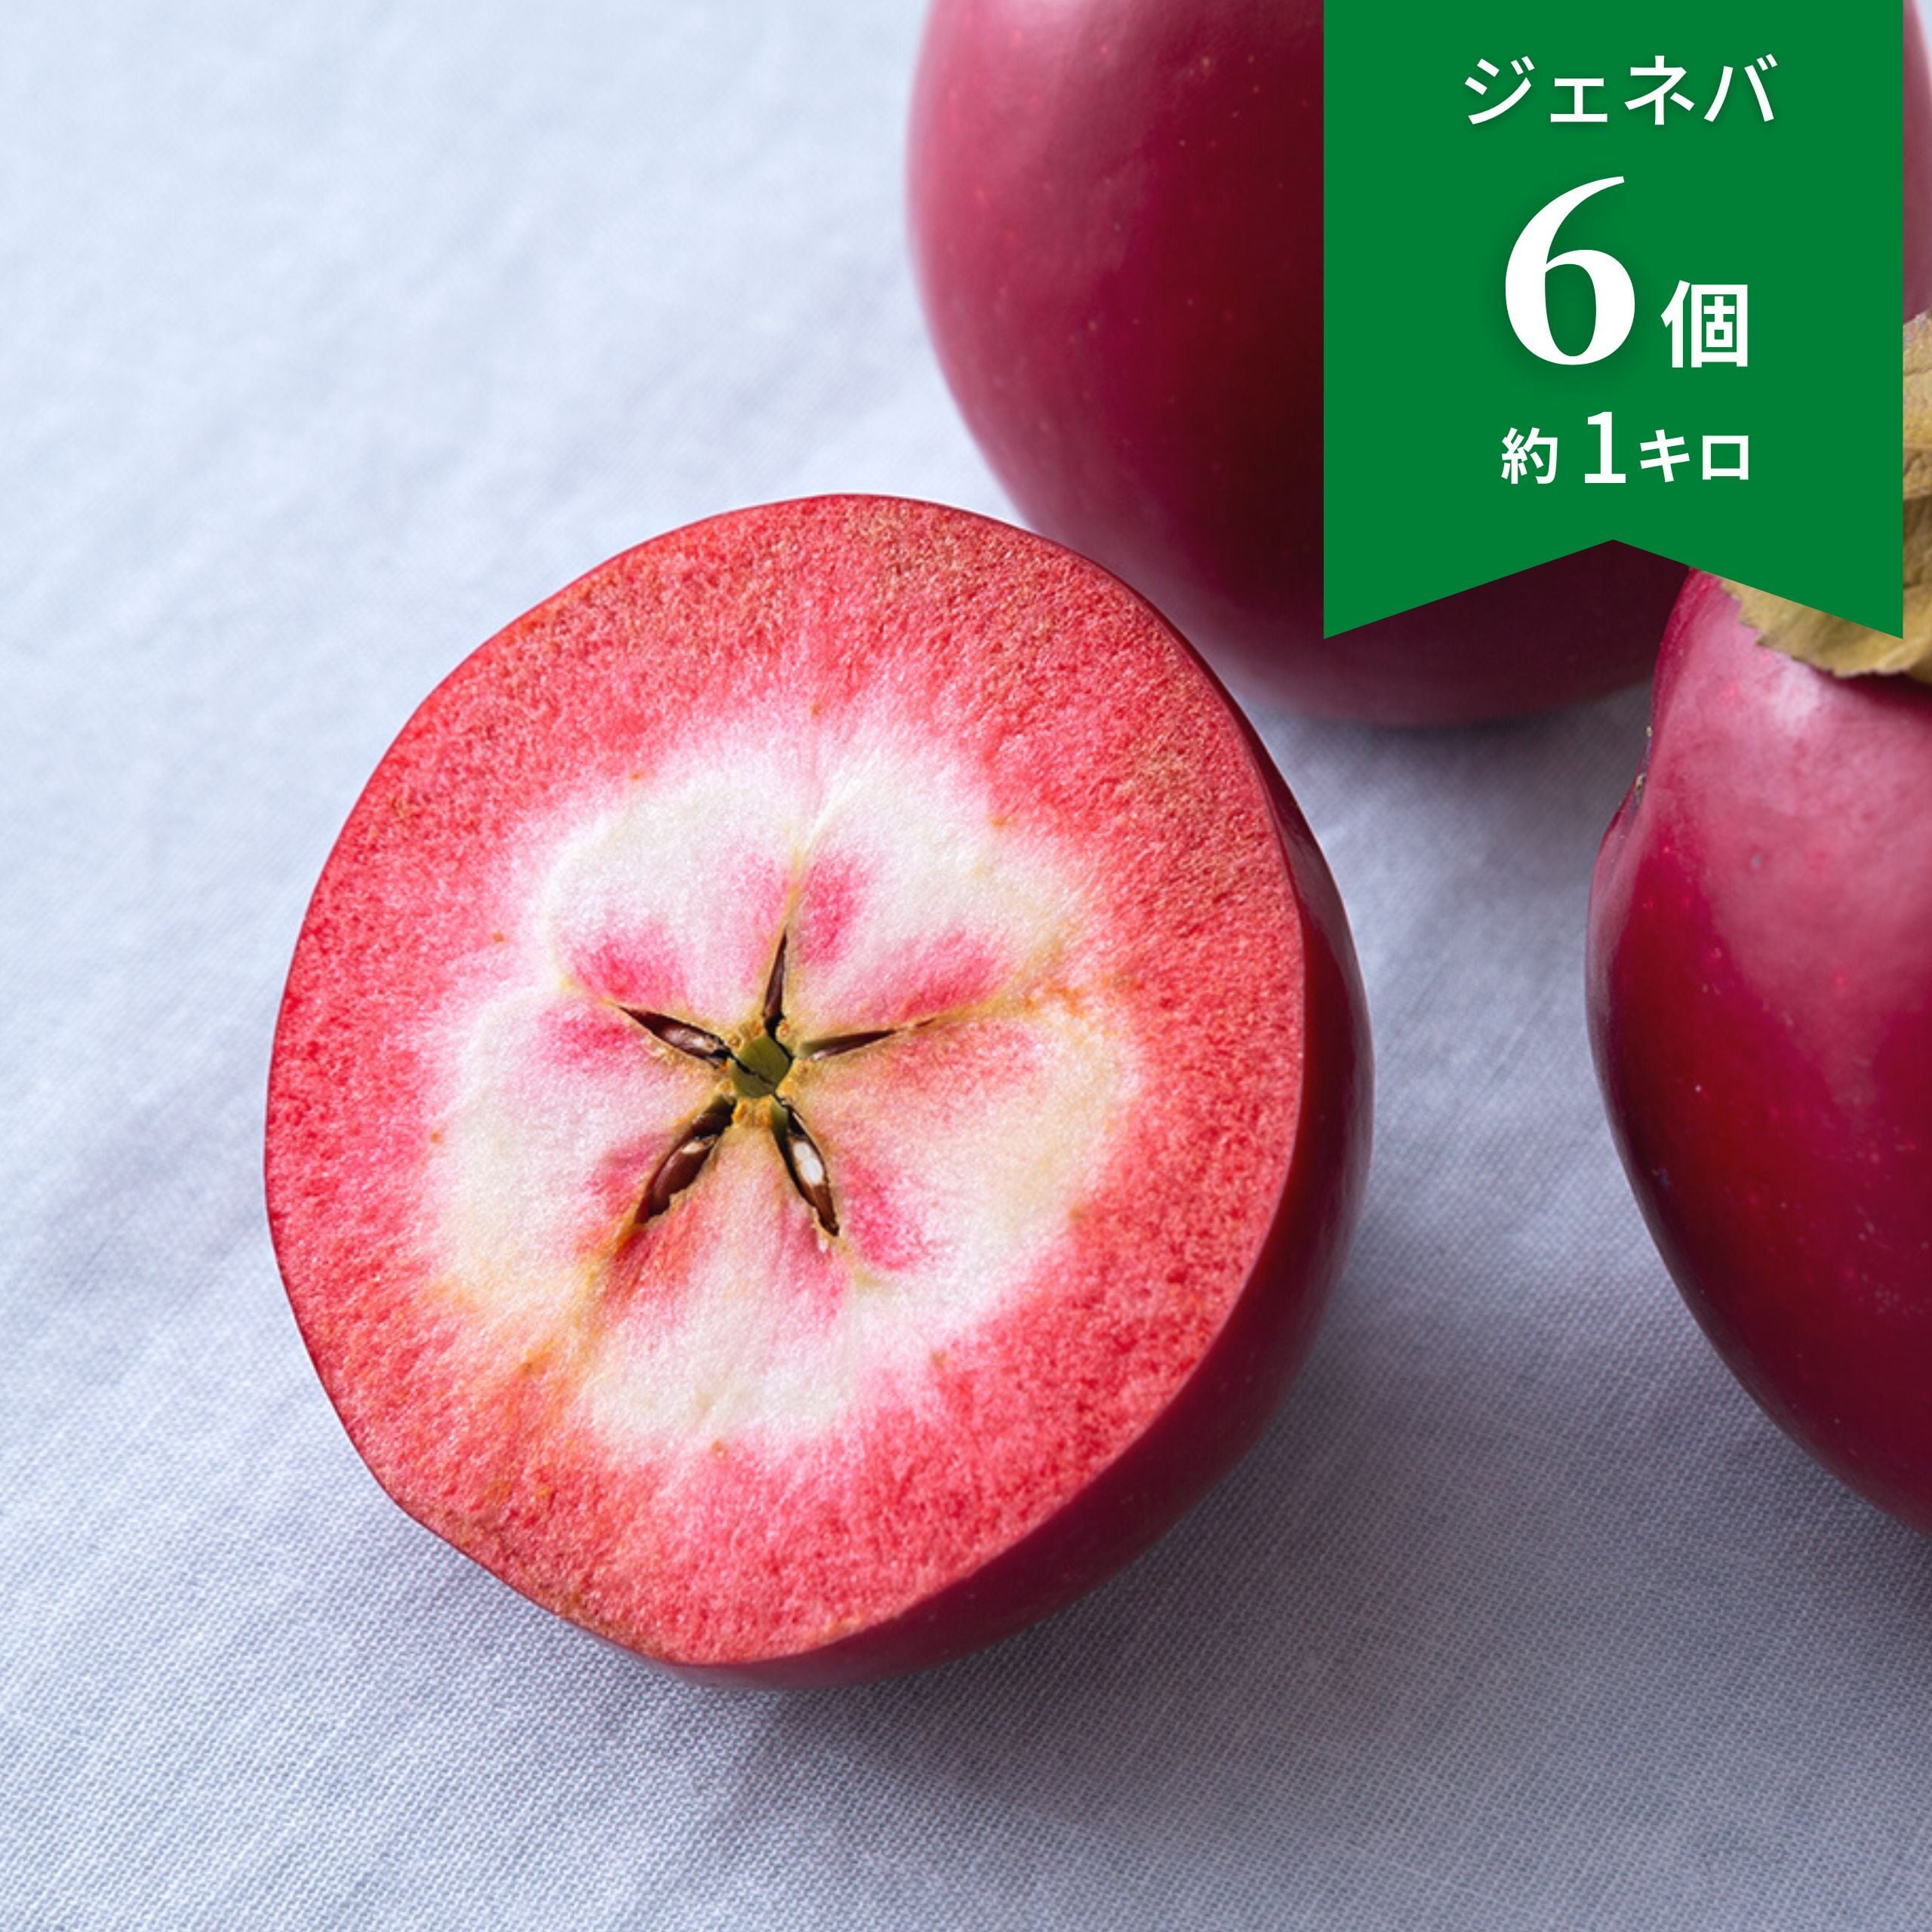 りんご - 果物